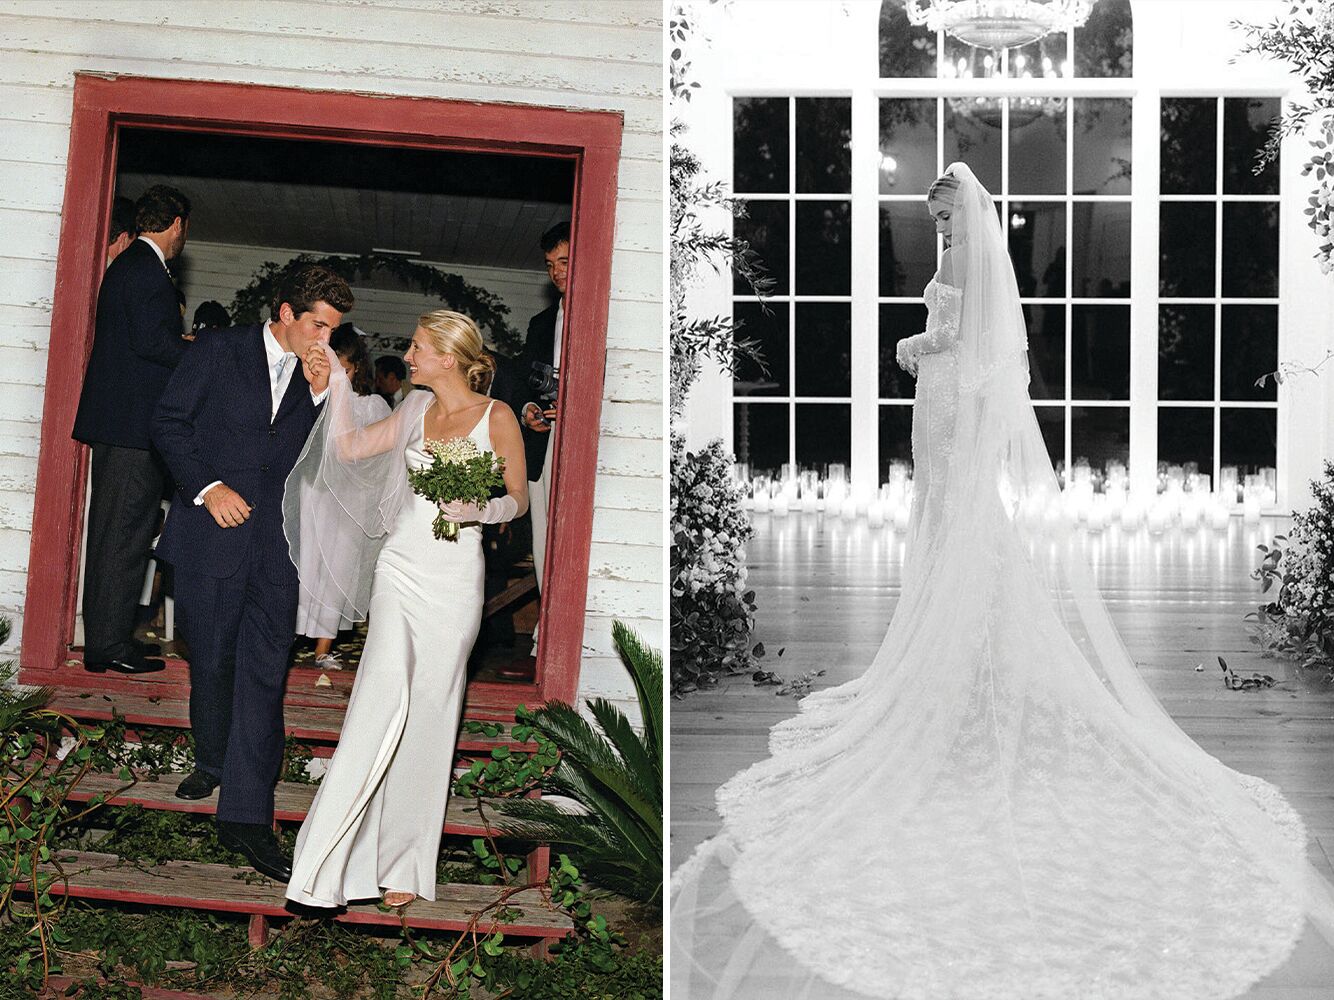 John F. Kennedy Jr. and Carolyn Bessette Kennedy Wedding and Hailey Bieber